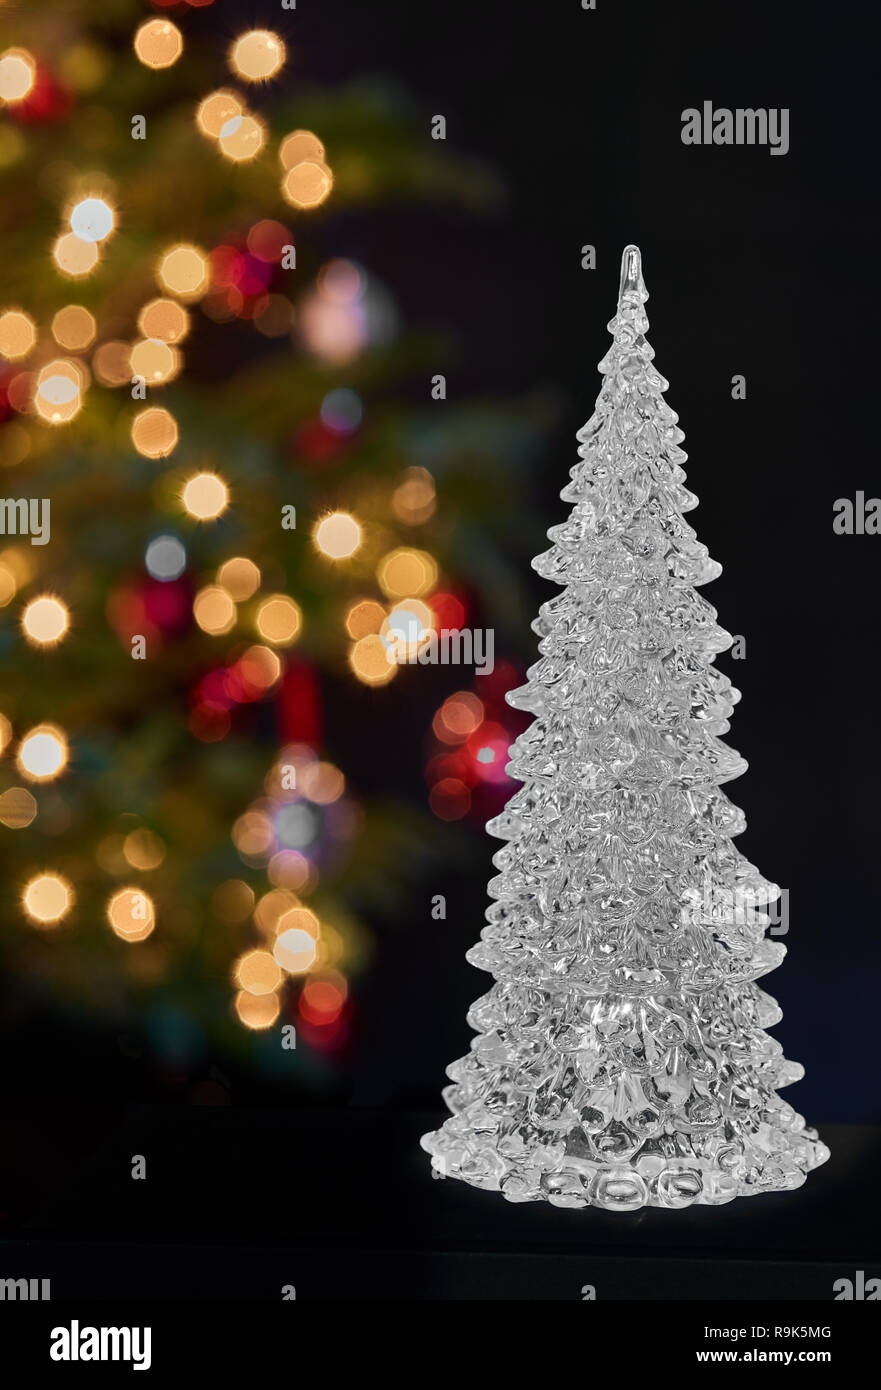 Árbol de navidad de cristal en la parte delantera de una verdadera navidad decorado con luces multicolores Foto de stock